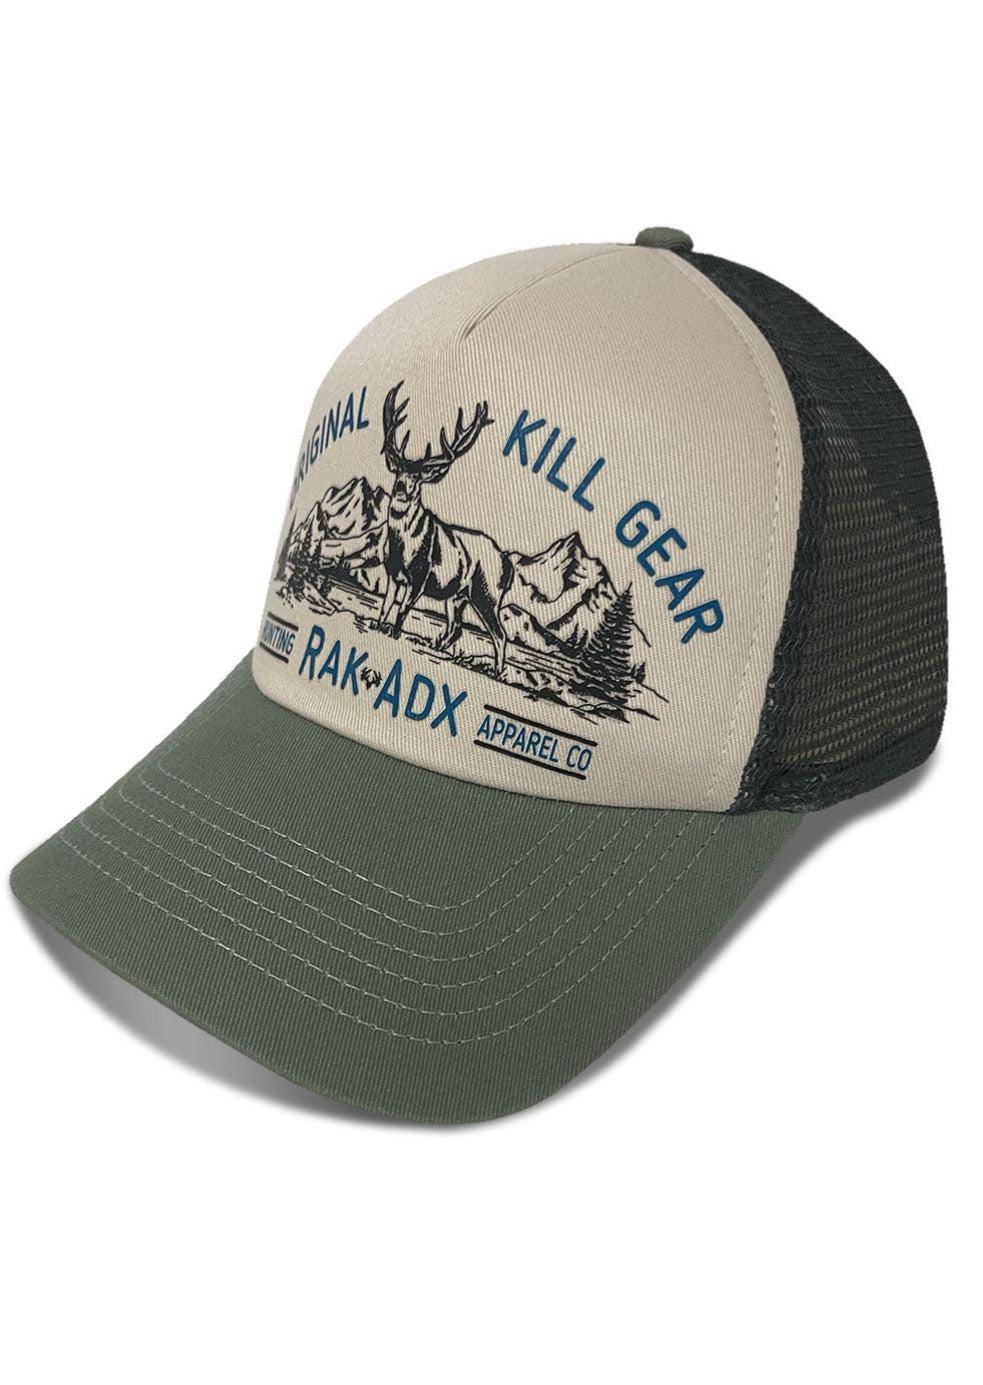 Muley Time Foamy Hat